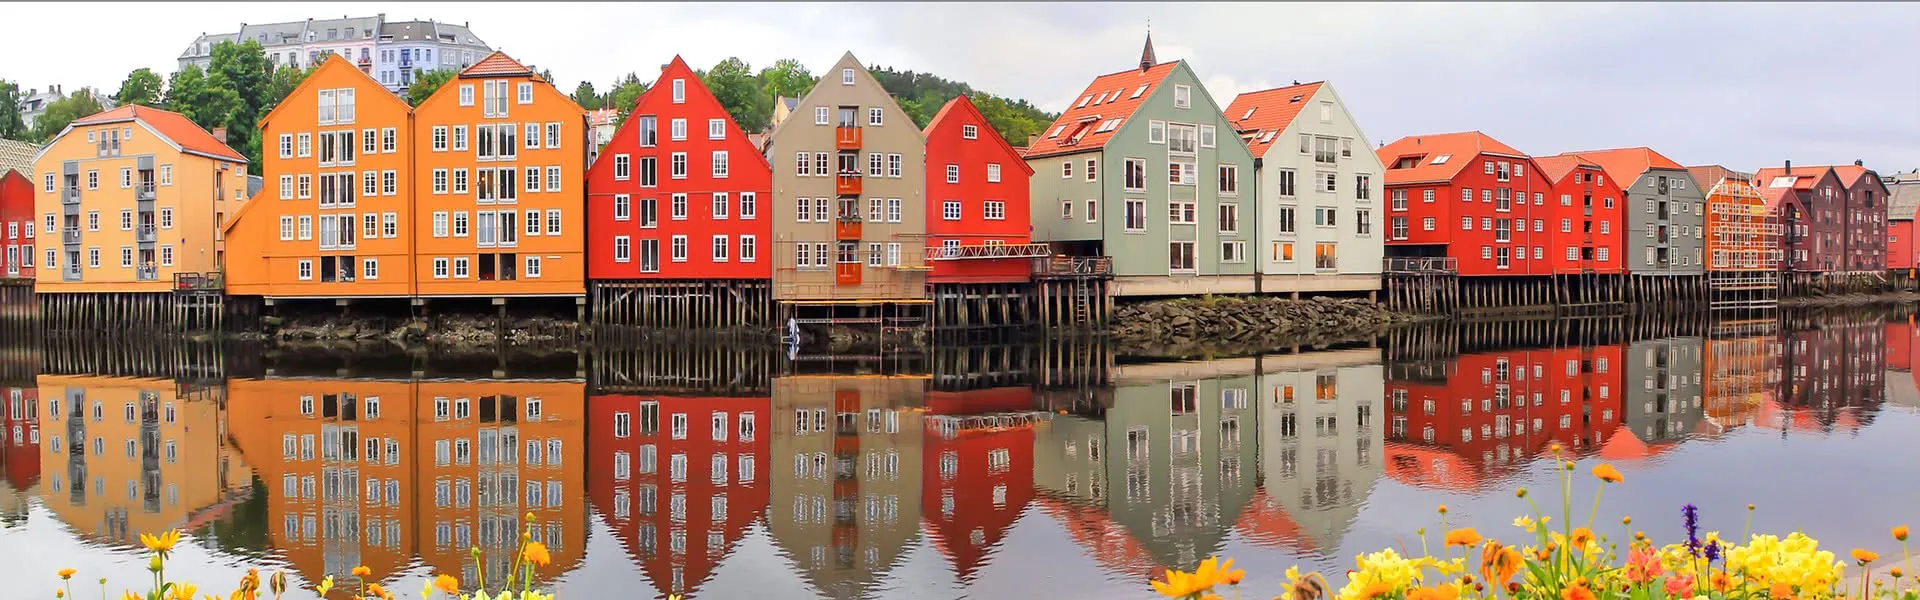 Trondheim - das Reiseziel mit Jugendherbergen